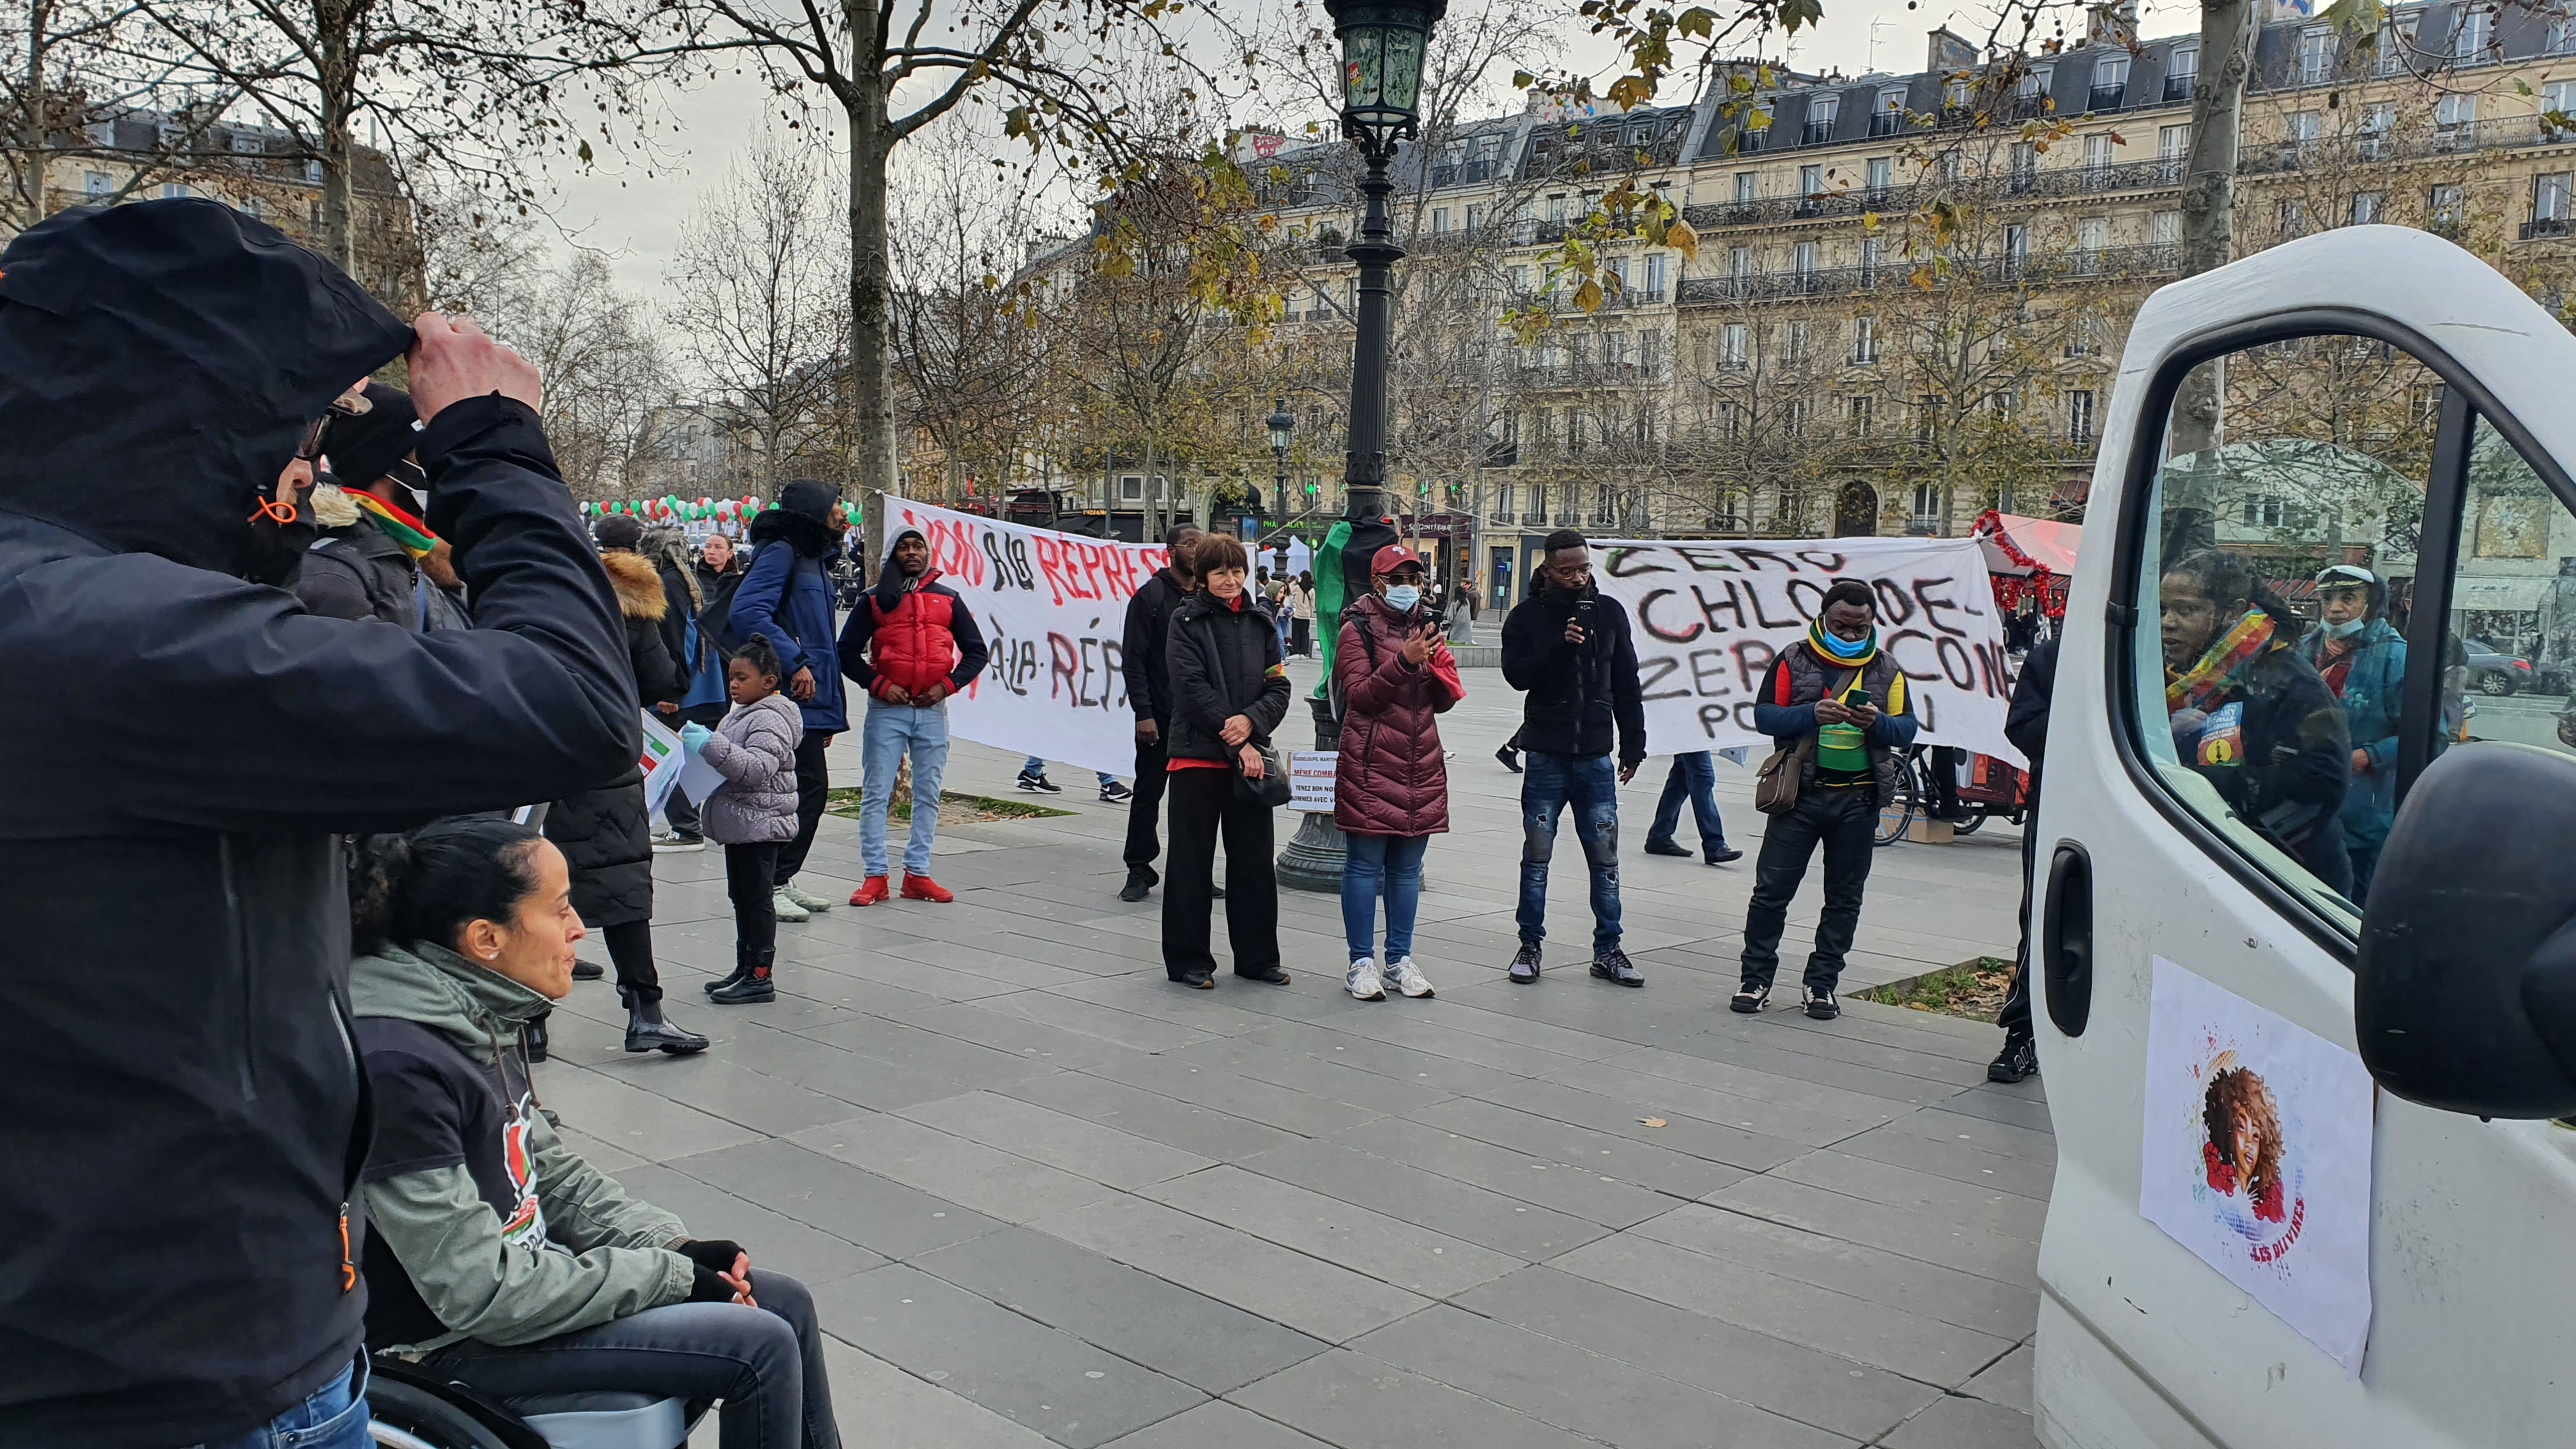     Une marche organisée à Paris en soutien aux mouvements sociaux des Antilles et de la Nouvelle-Calédonie

